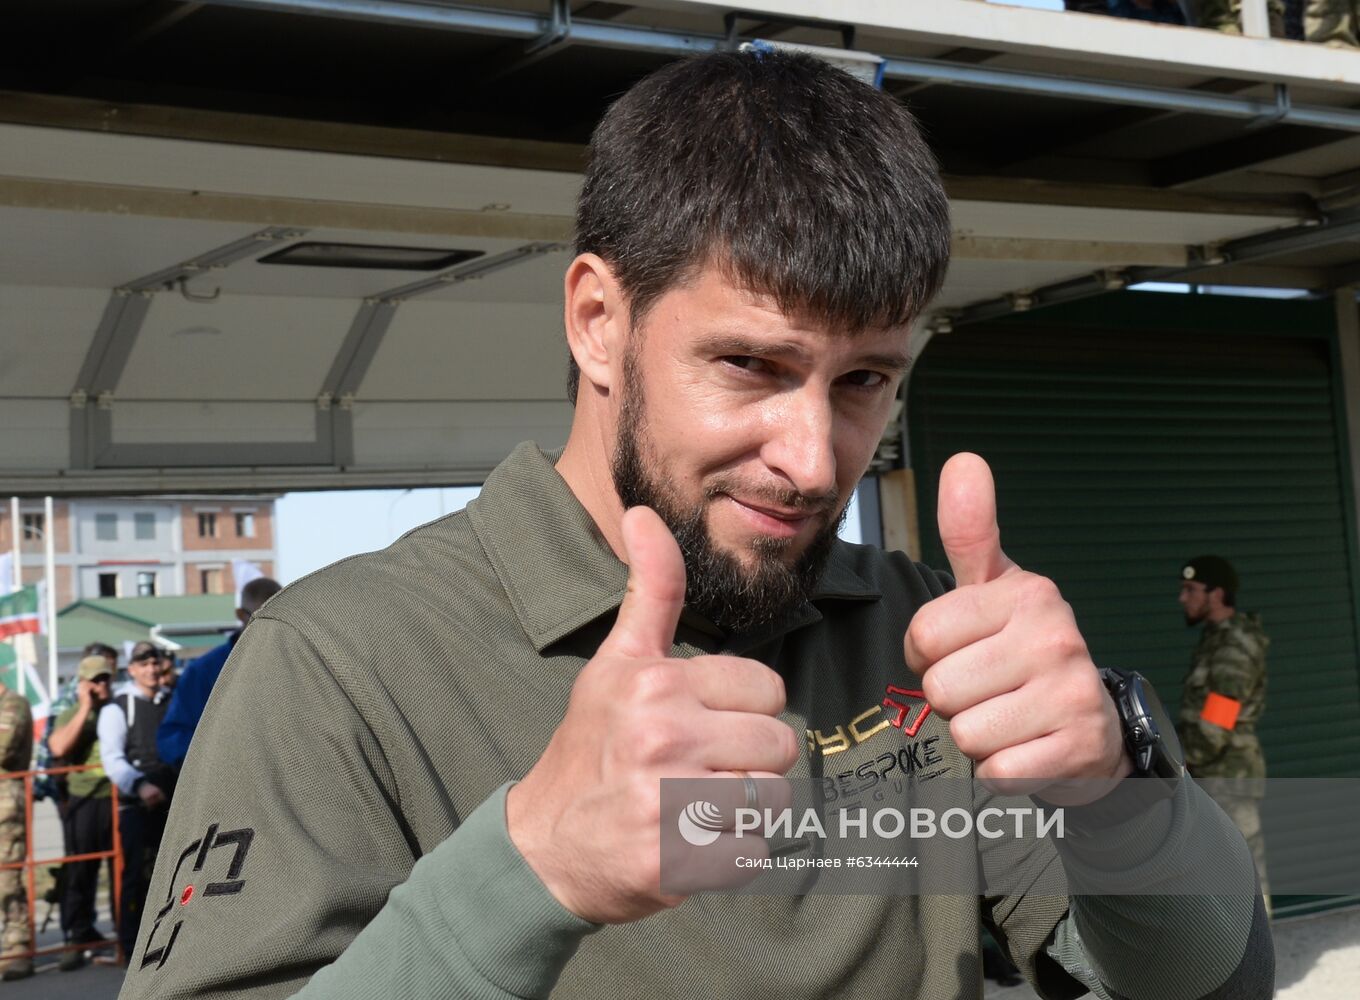 Чемпионат Чеченской Республики по тактической стрельбе среди силовых подразделений